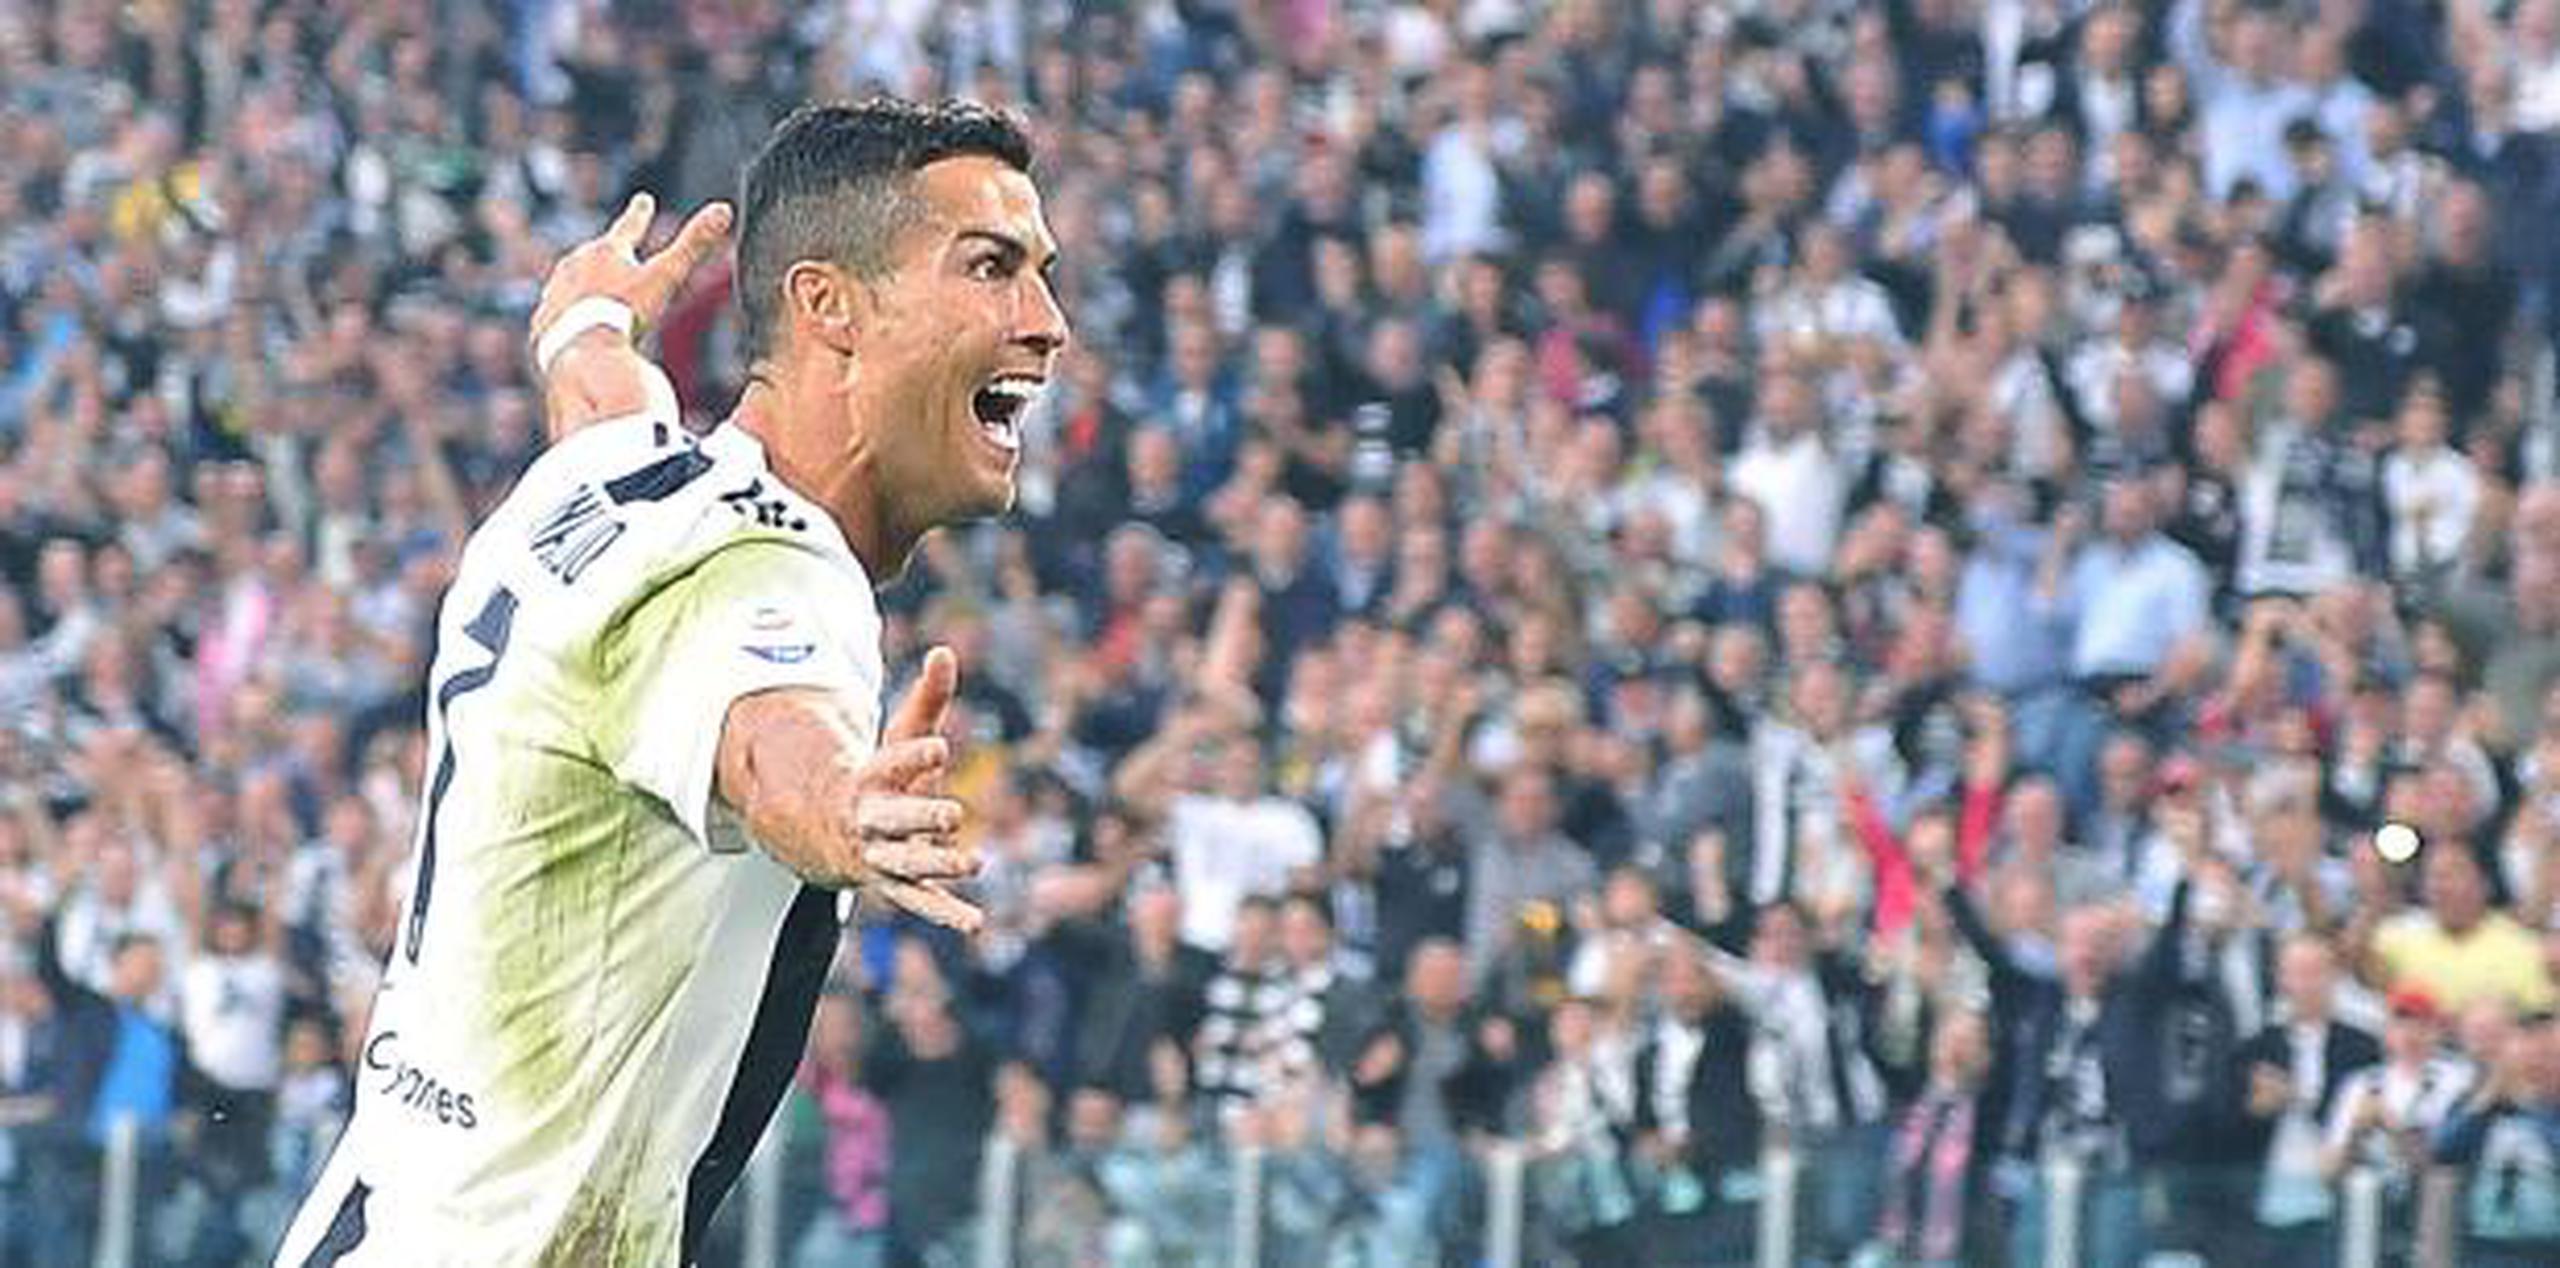 Sobre el fichaje por la Juve, Ronaldo señaló que no se debió al dinero, sino al hecho de que los italianos le "deseaban de verdad". (AP)

